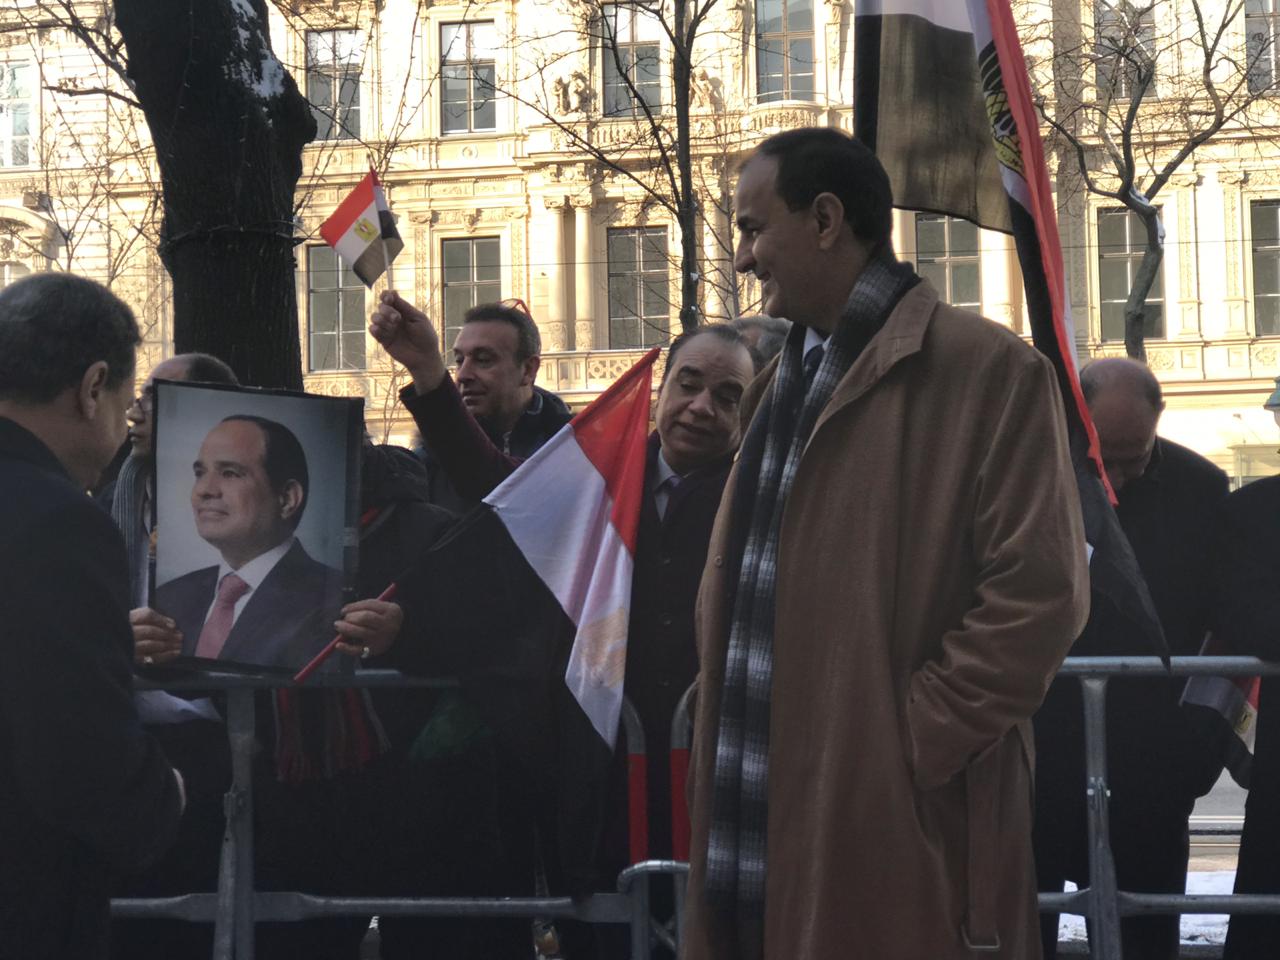   شاهد| الجالية المصرية بالنمسا تستقبل الرئيس السيسى بأعلام مصر